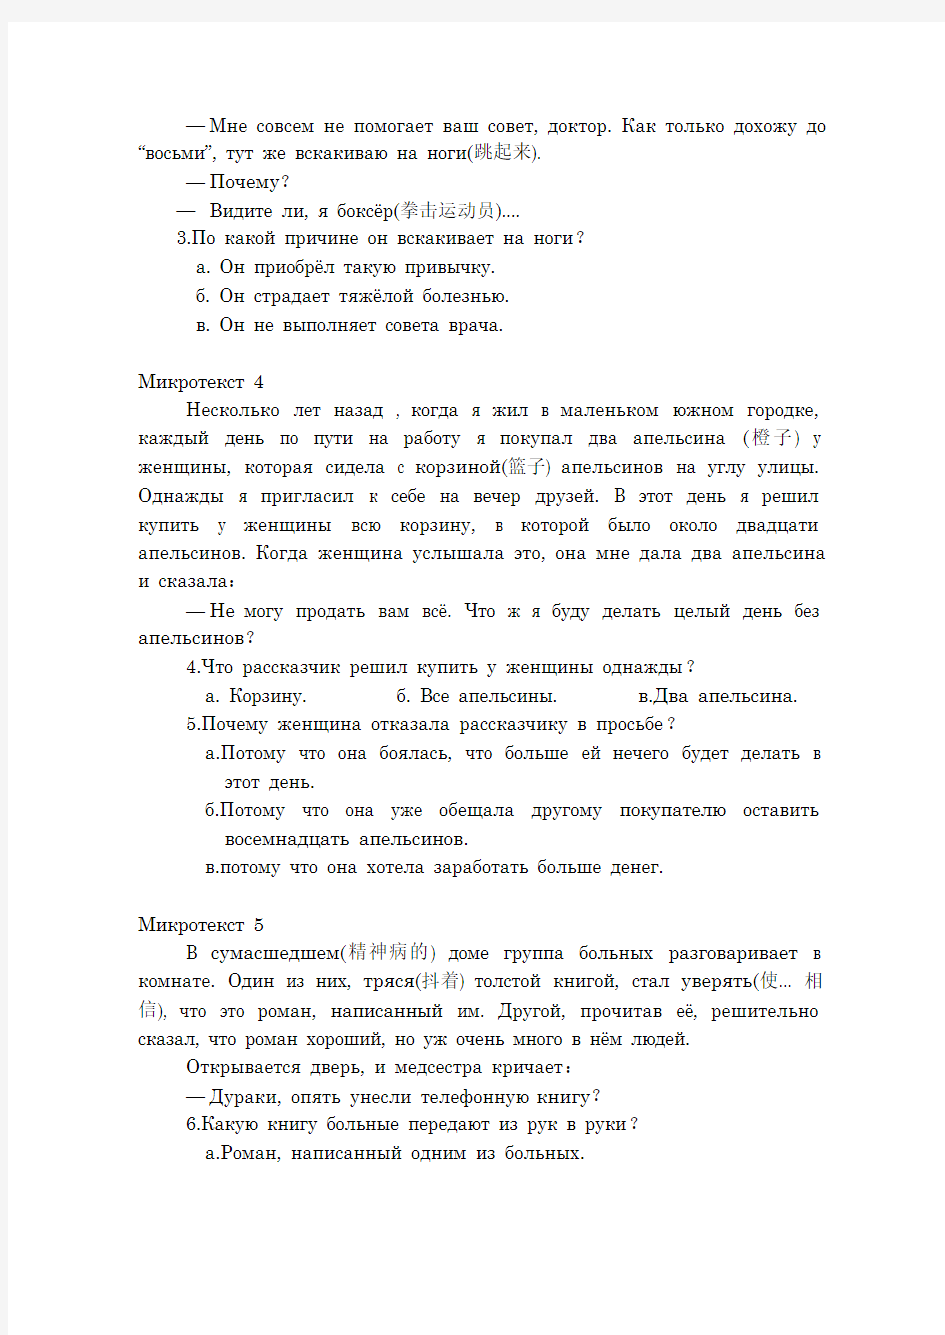 金状元试卷网-考研真题二外俄语2006